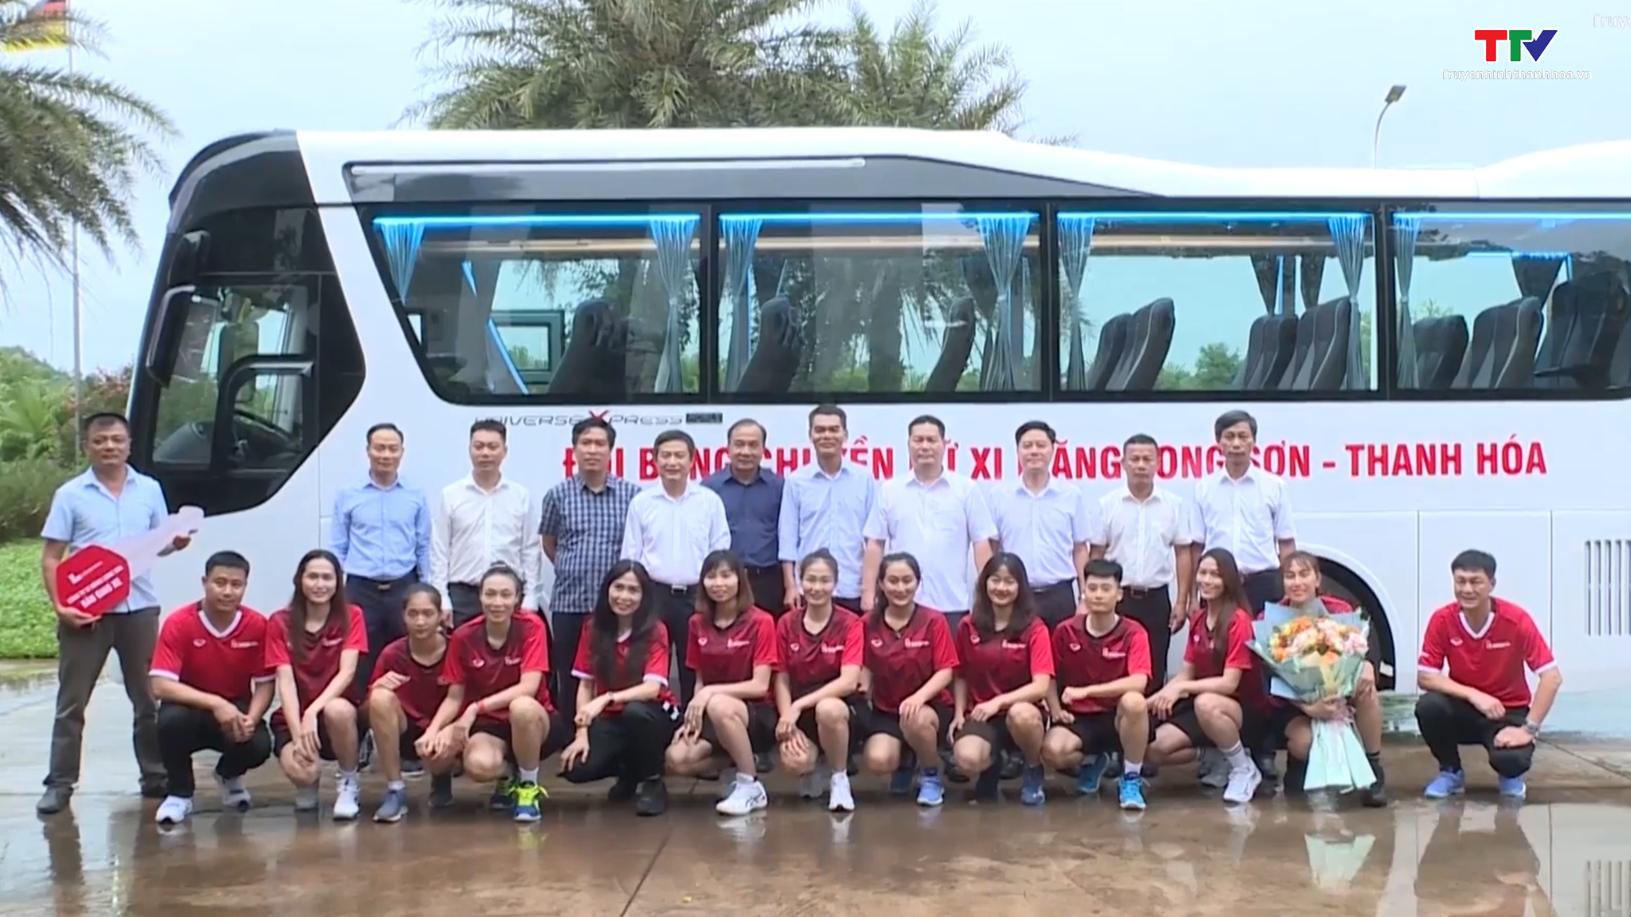 Trao tặng và bàn giao xe ô tô cho đội bóng chuyền nữ Xi măng Long Sơn Thanh Hoá - Ảnh 3.